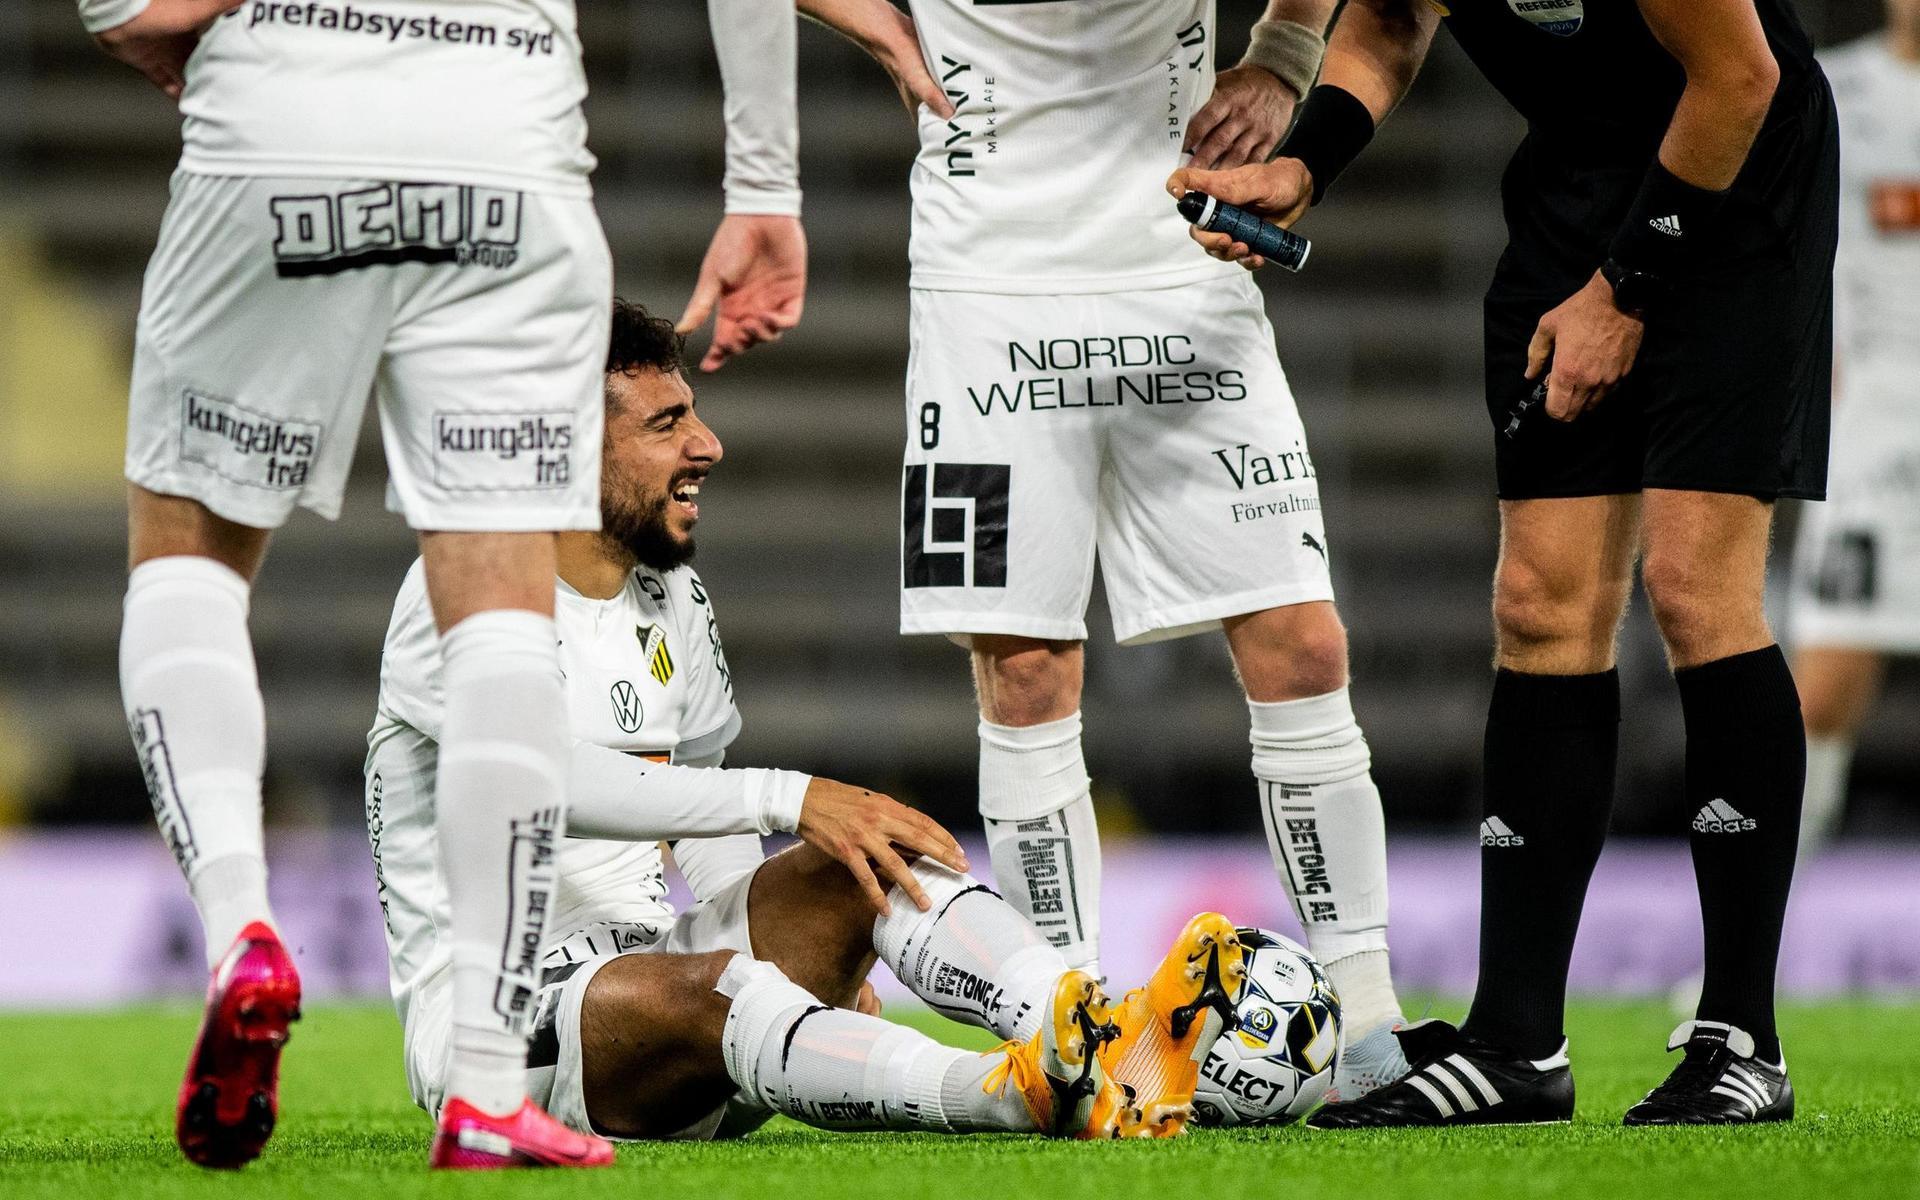 Häckens Daleho Irandust har ont under fotbollsmatchen i Allsvenskan mellan Elfsborg och Häcken.